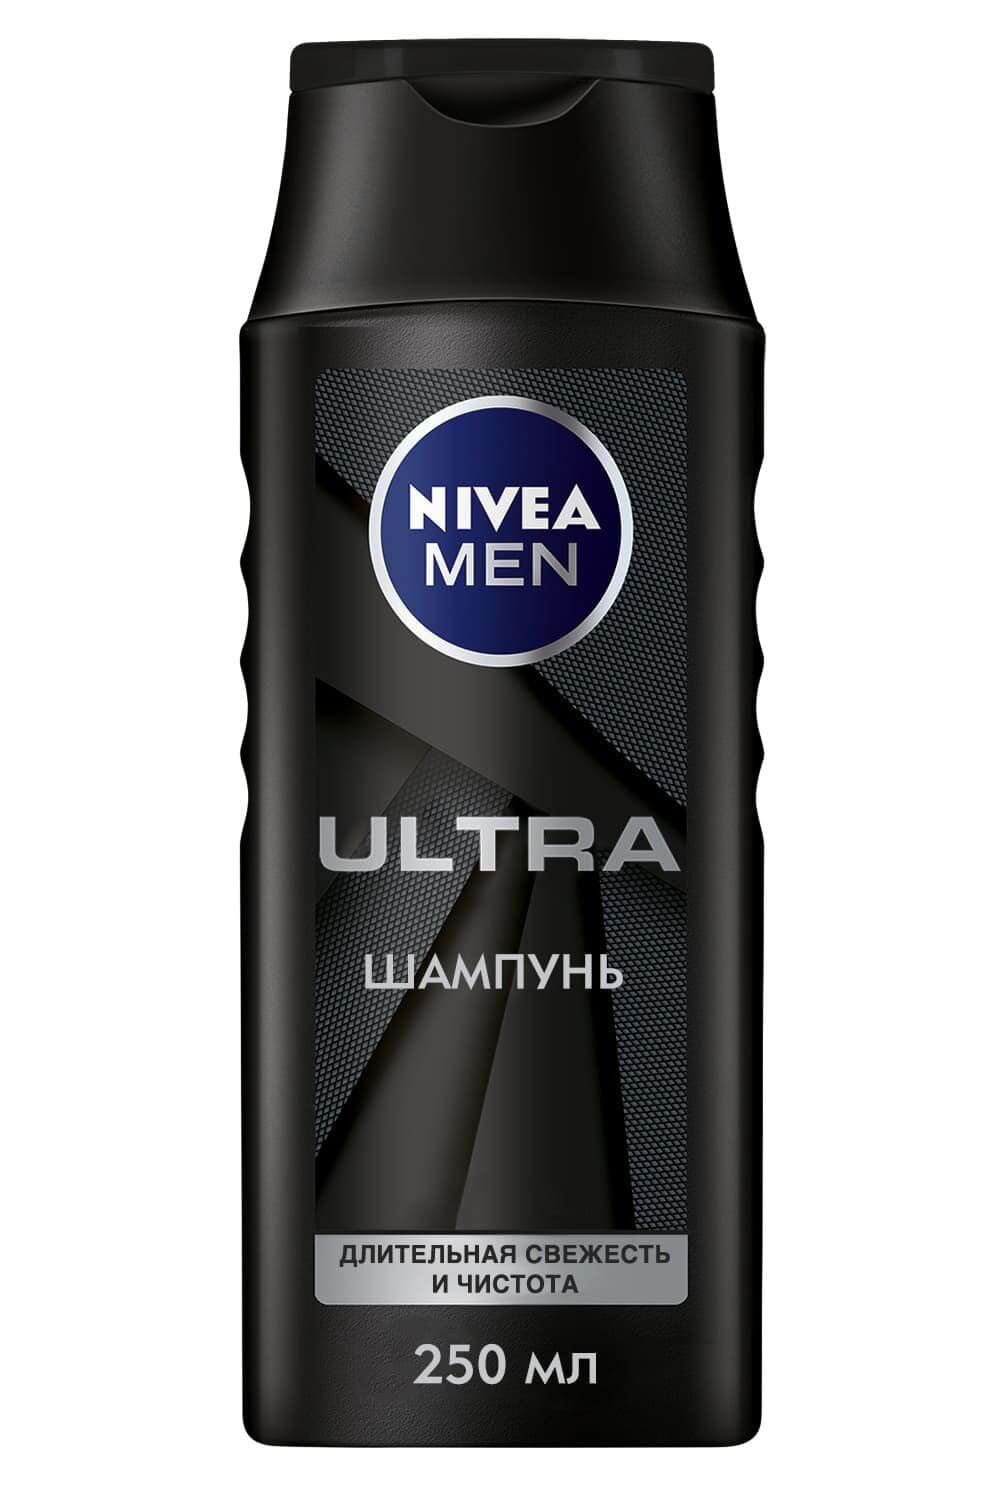 Шампунь Nivea Men 250 мл ULTRA для волос длительная свежесть и чистота с активным углем